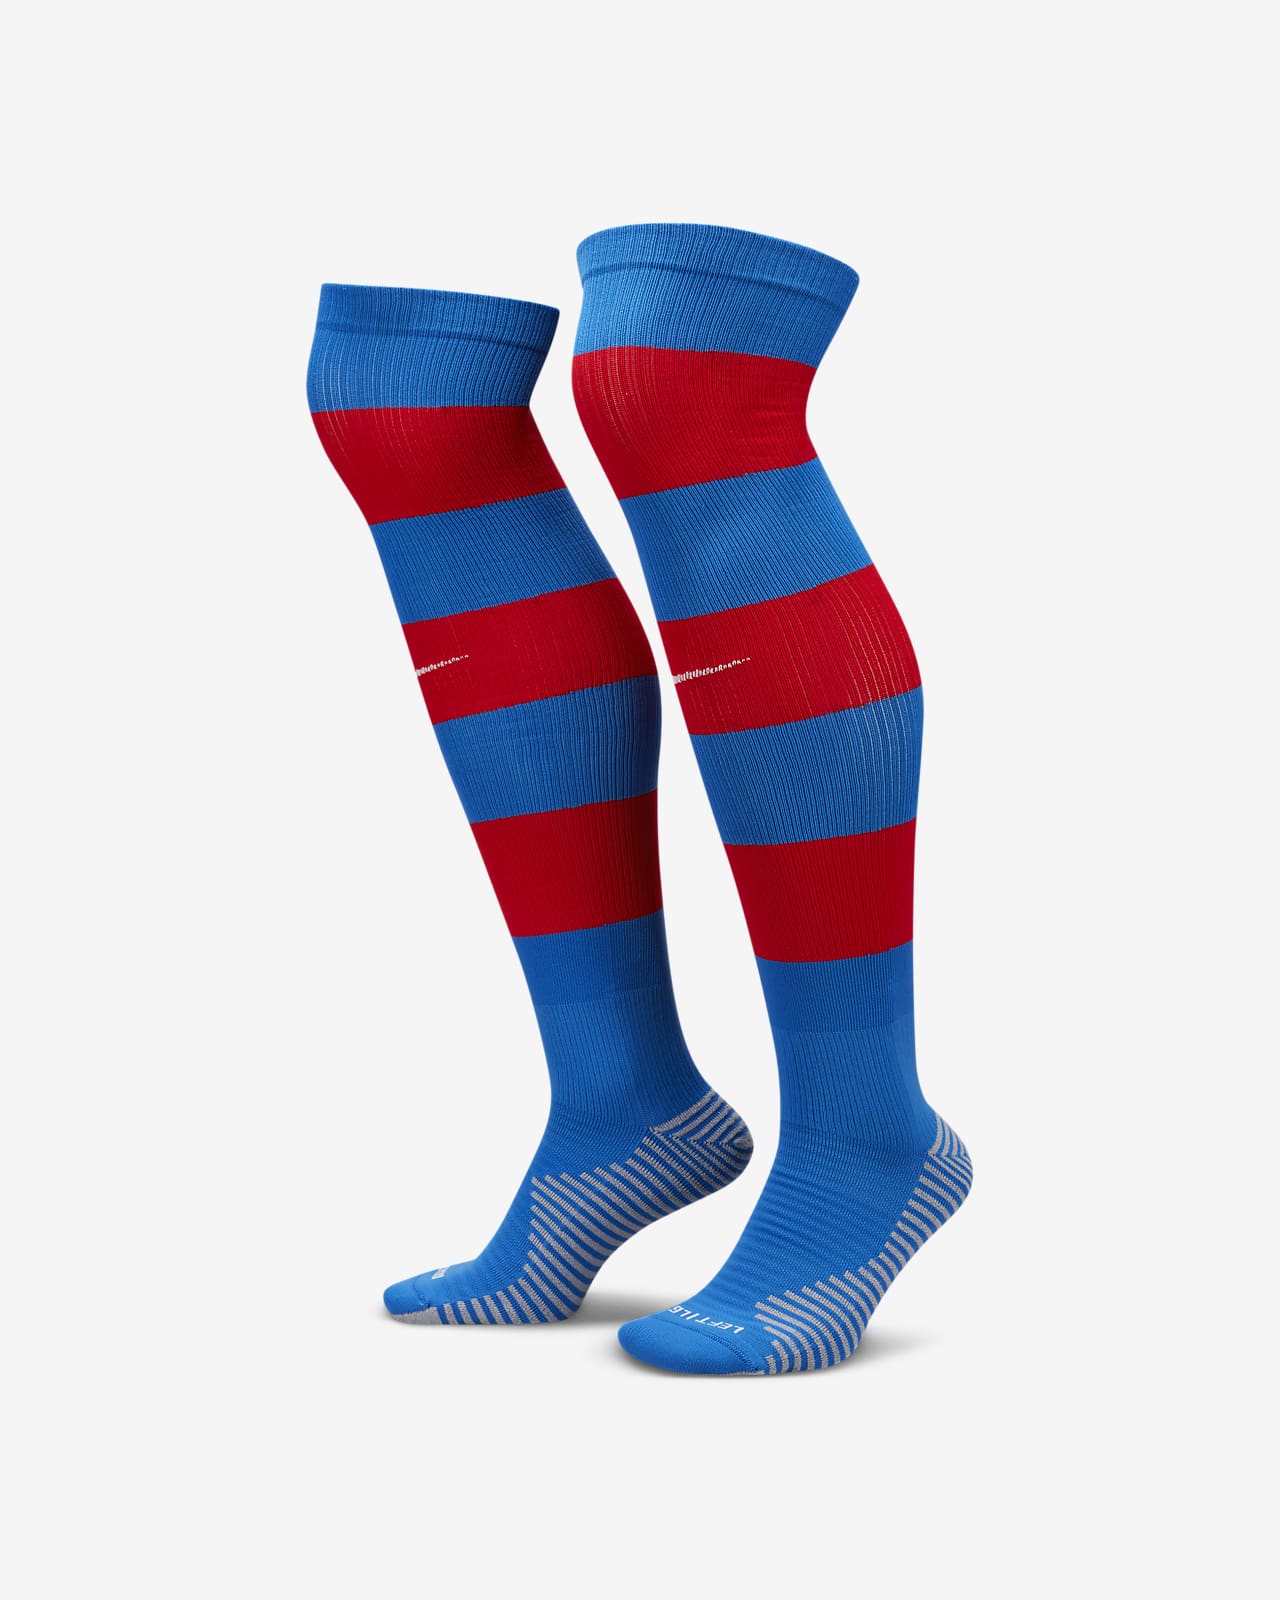 Ποδοσφαιρικές κάλτσες μέχρι το γόνατο εκτός έδρας Μπαρτσελόνα Strike